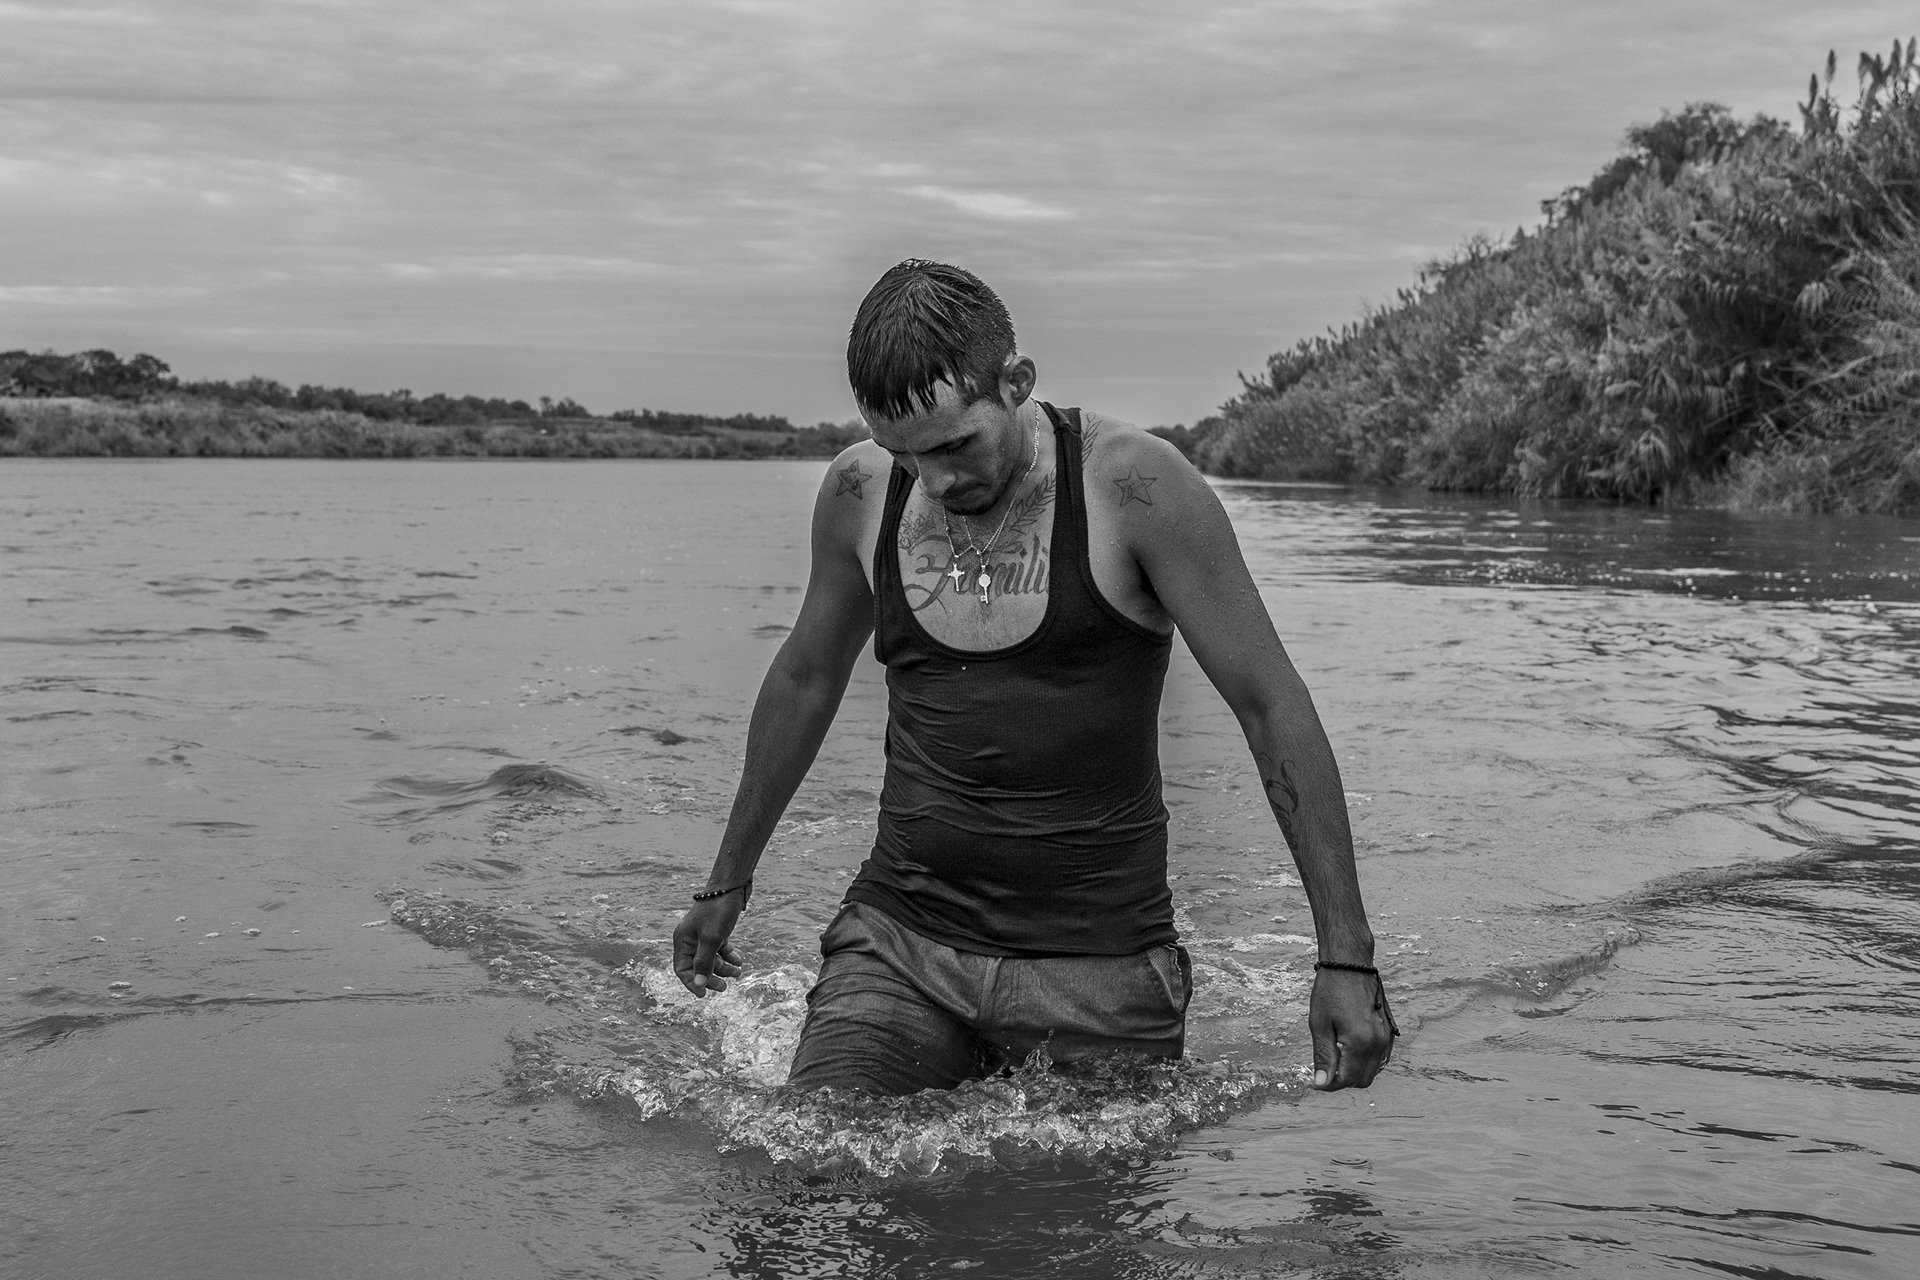 Carlos Mendoza, a Venezuelan migrant, crosses the Rio Grande river to seek asylum in the United States. Piedras Negras, Mexico.